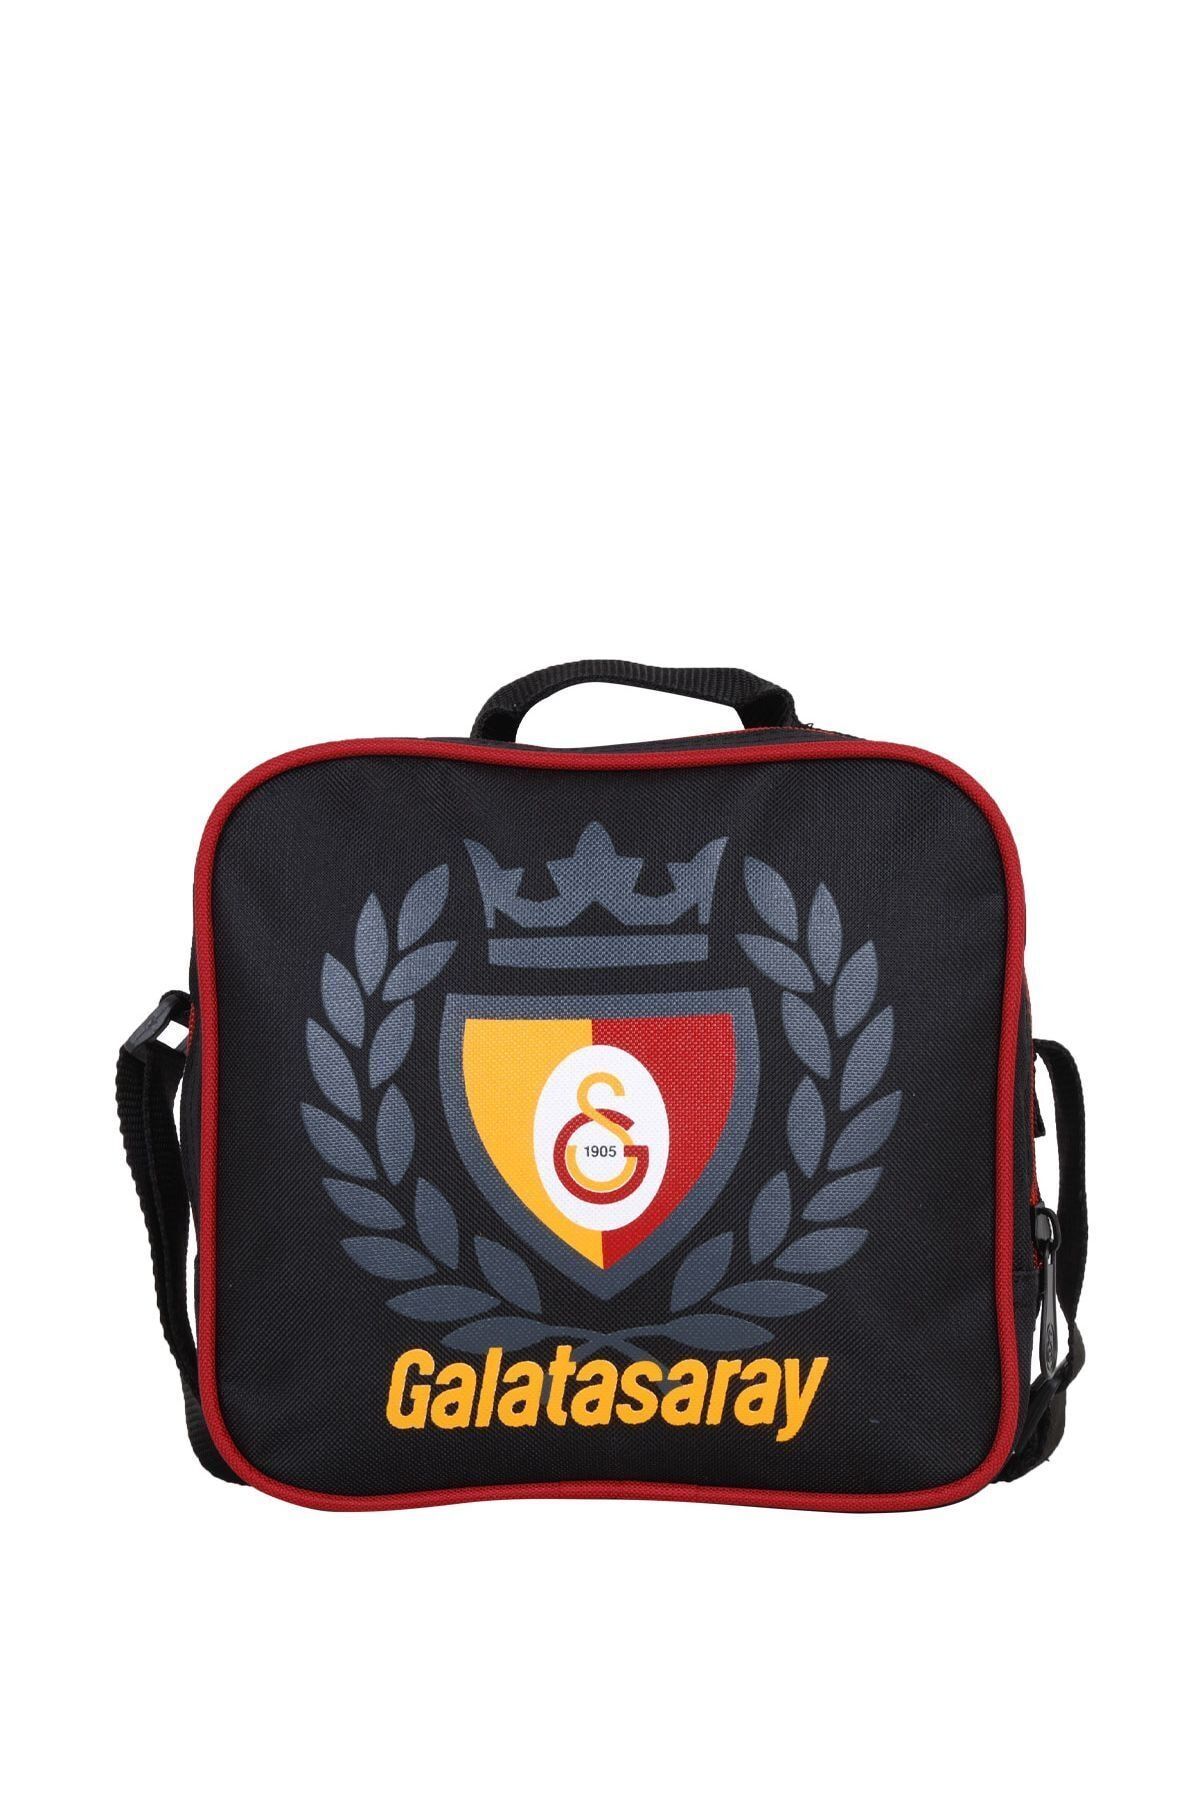 Galatasaray Unisex Arma Baskılı Beslenme Çantası 96220